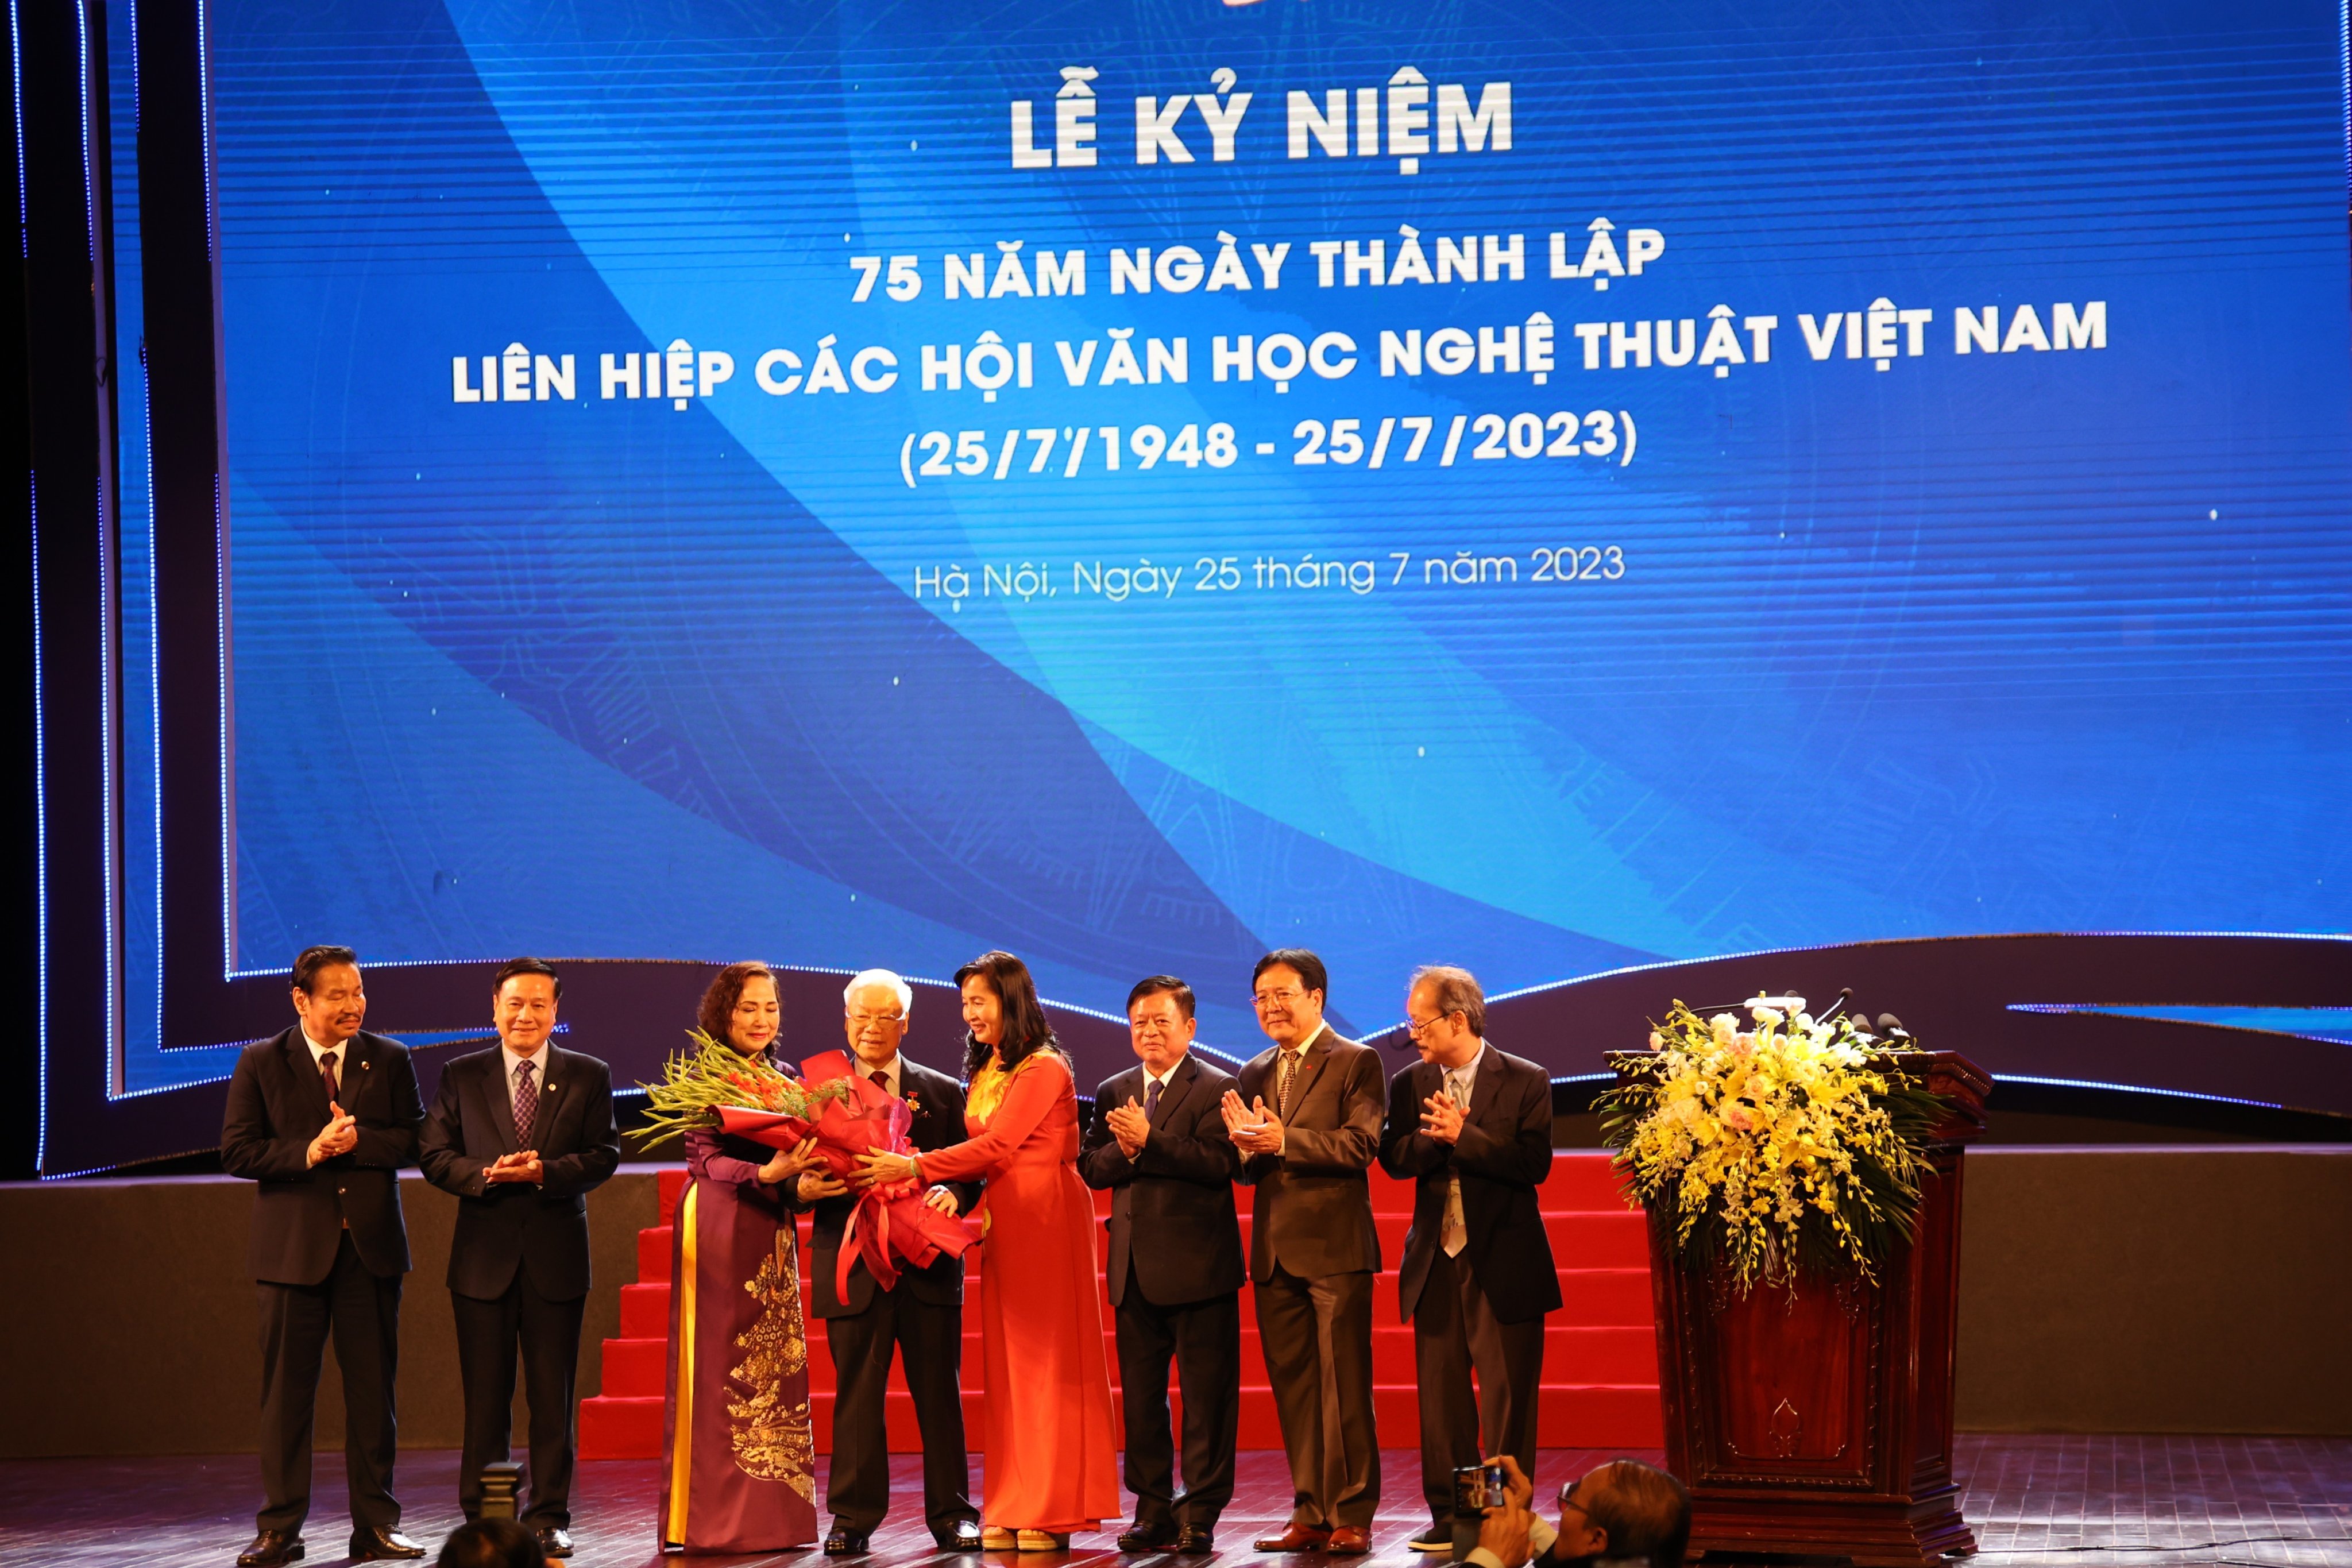 75 năm Liên hiệp các Hội Văn học nghệ thuật Việt Nam - Một dòng chảy lay động lòng người - 8